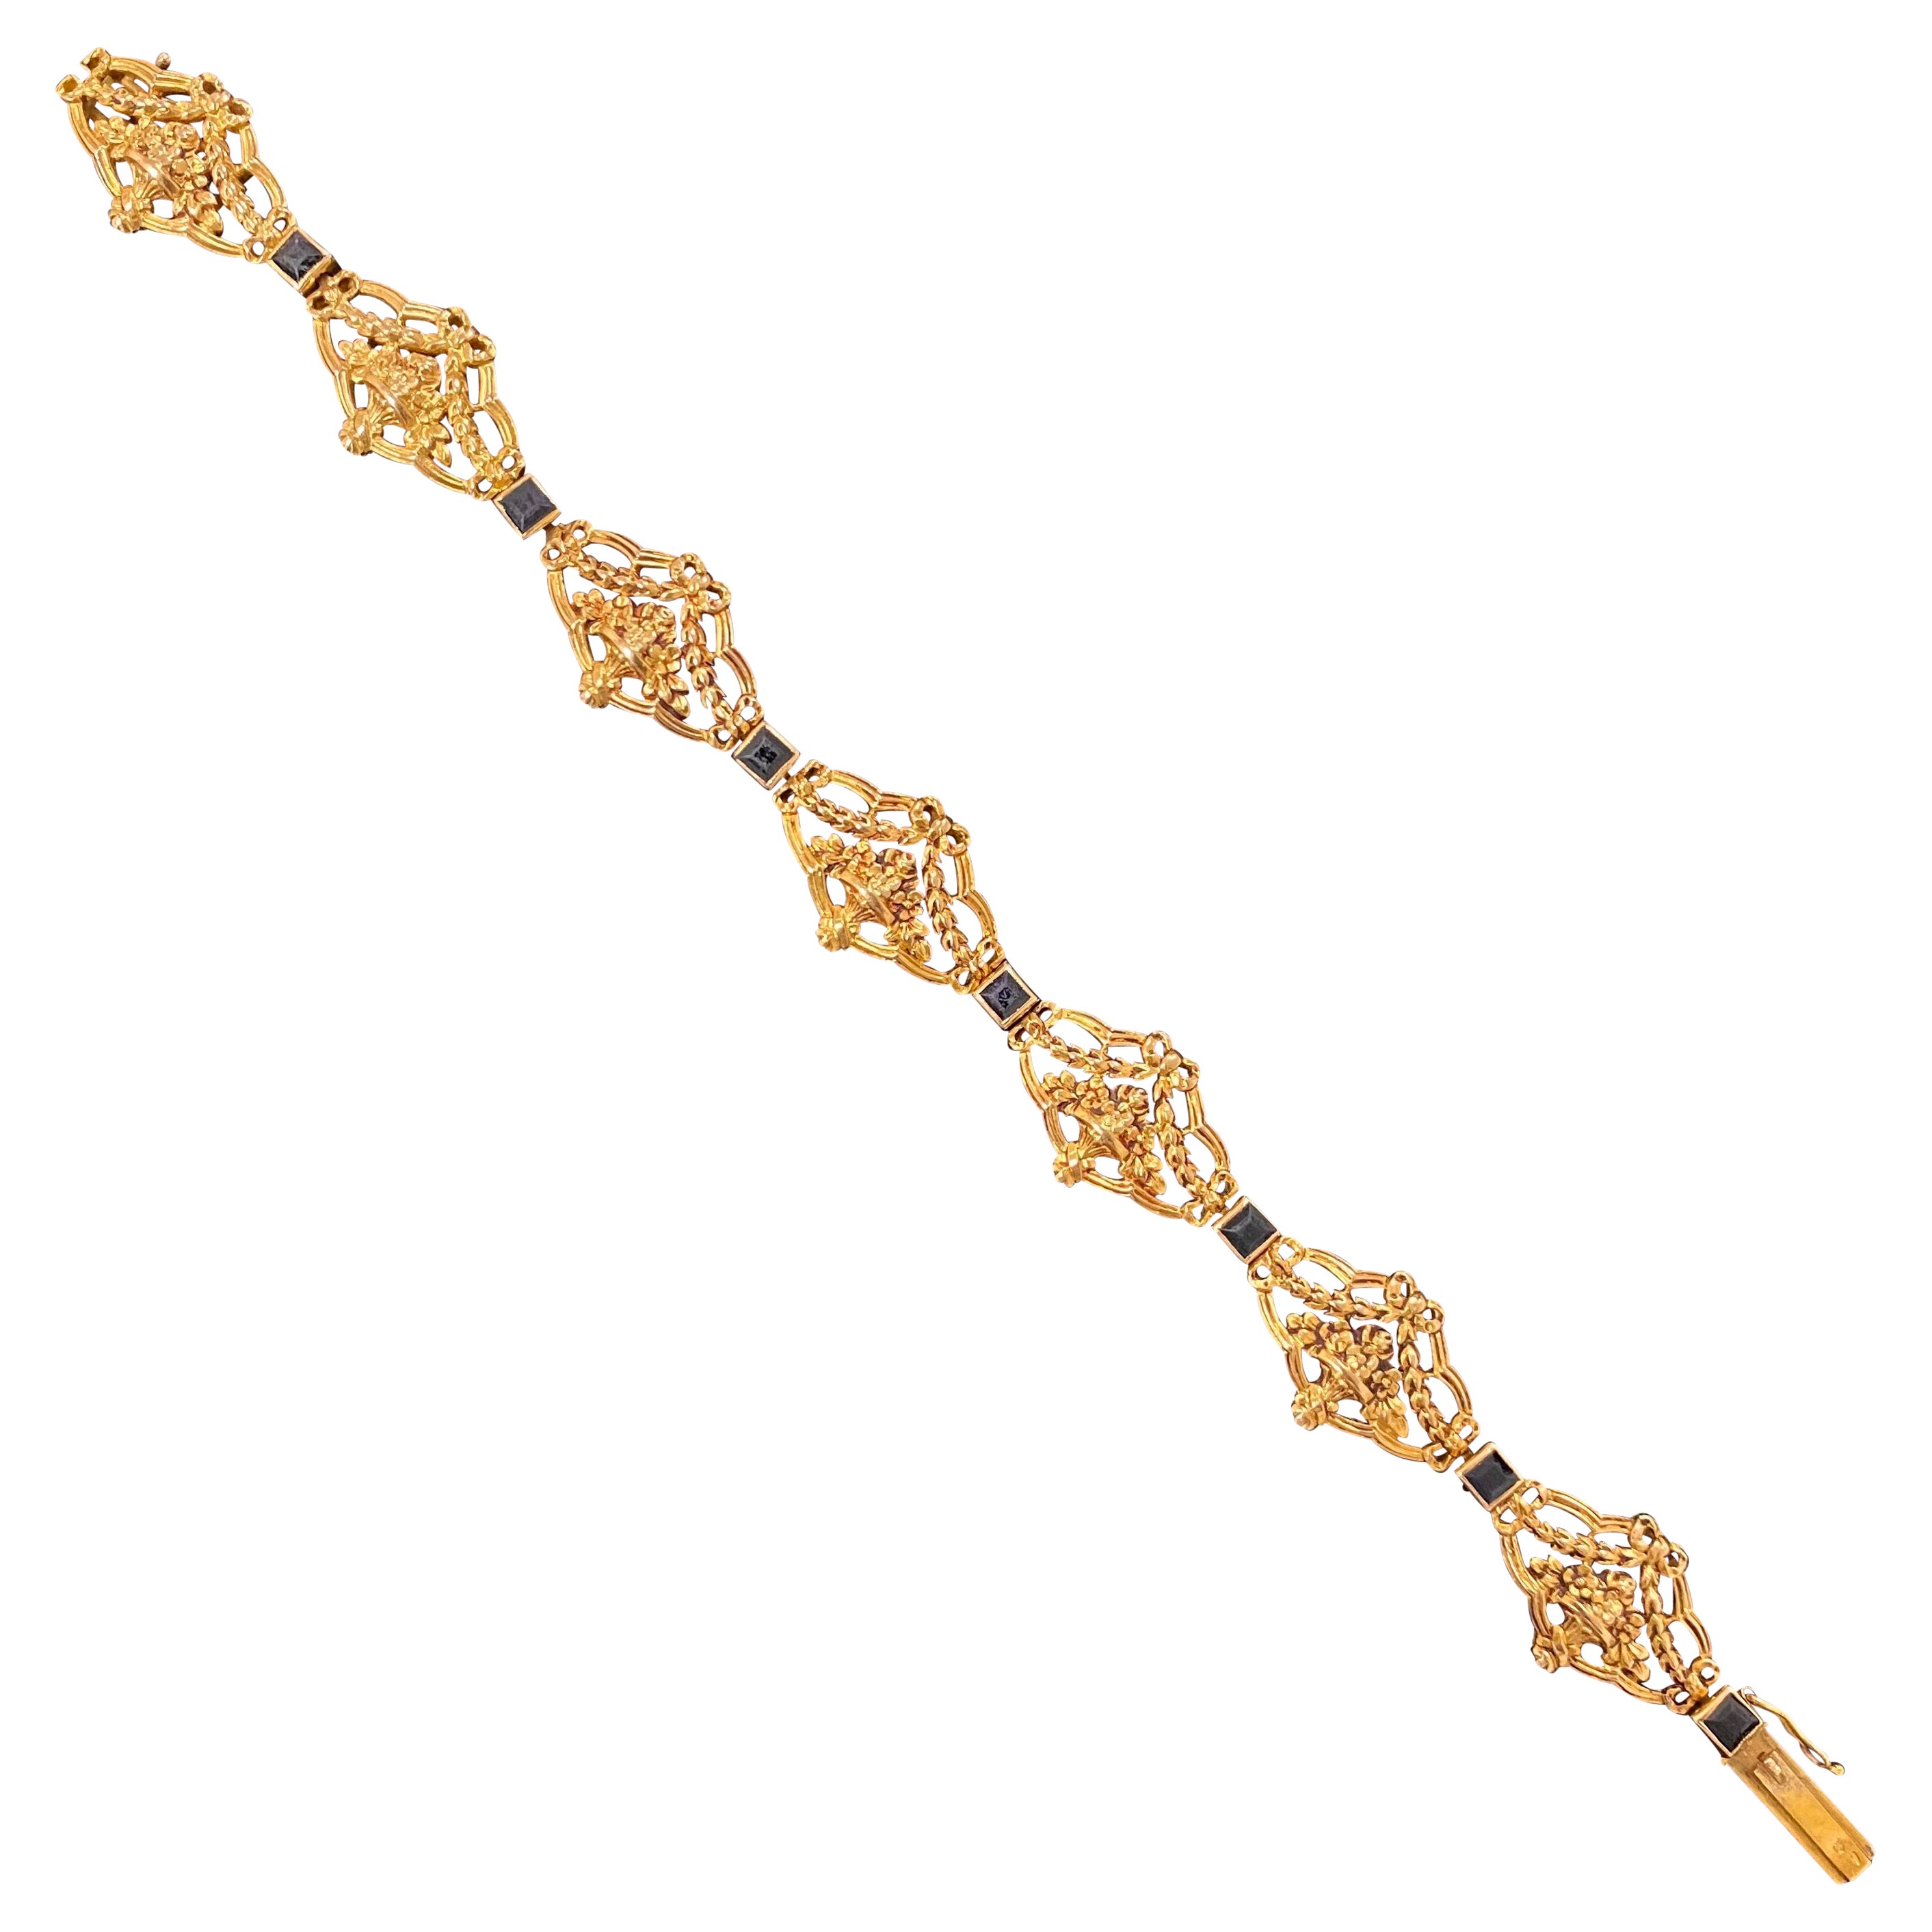 Antique La Belle Epoque Edwardian Sapphire Bracelet Yellow Gold Portuguese 1910s